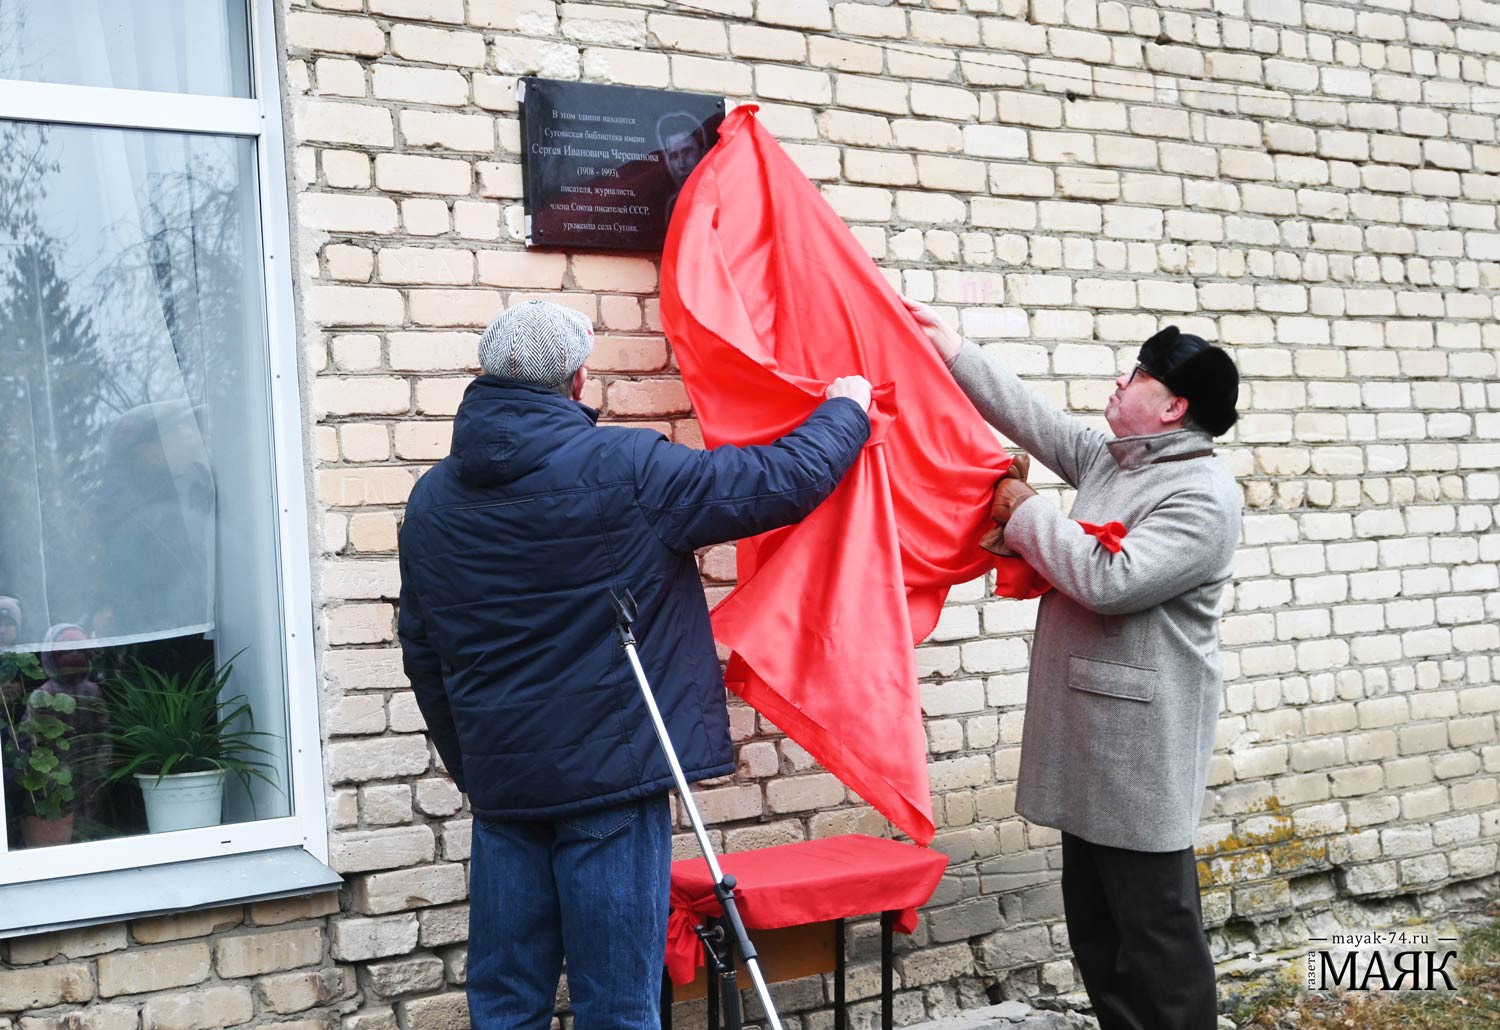 Мемориальная доска в память о писателе появилась в селе Сугояк